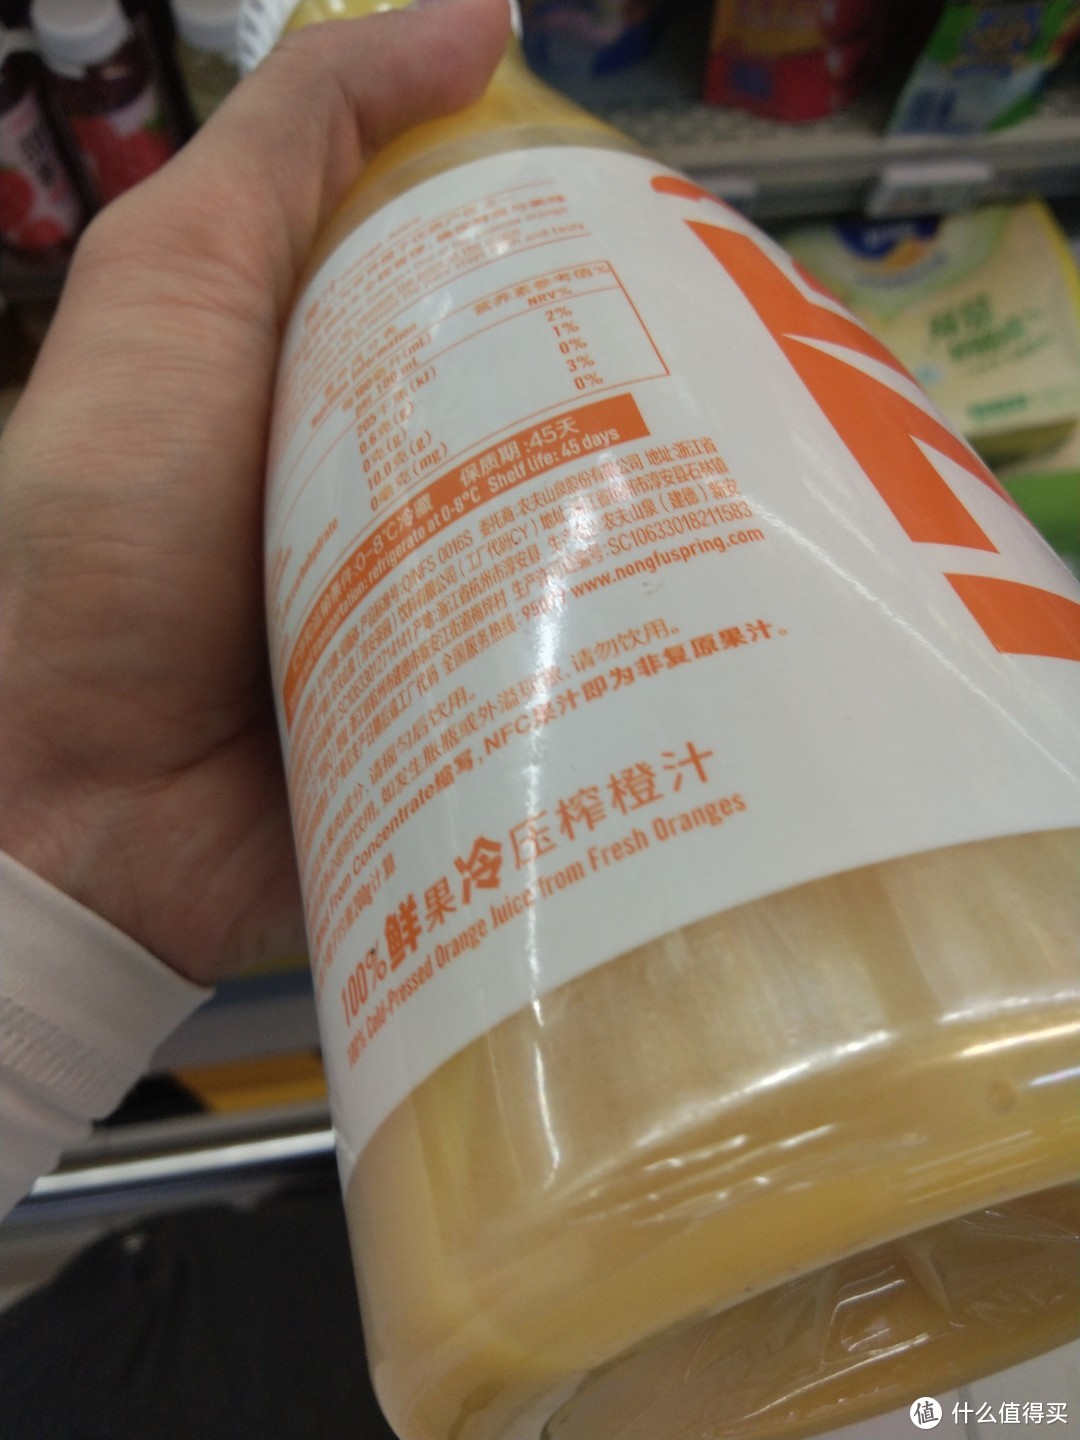 这个品牌的nfc橙汁好喝